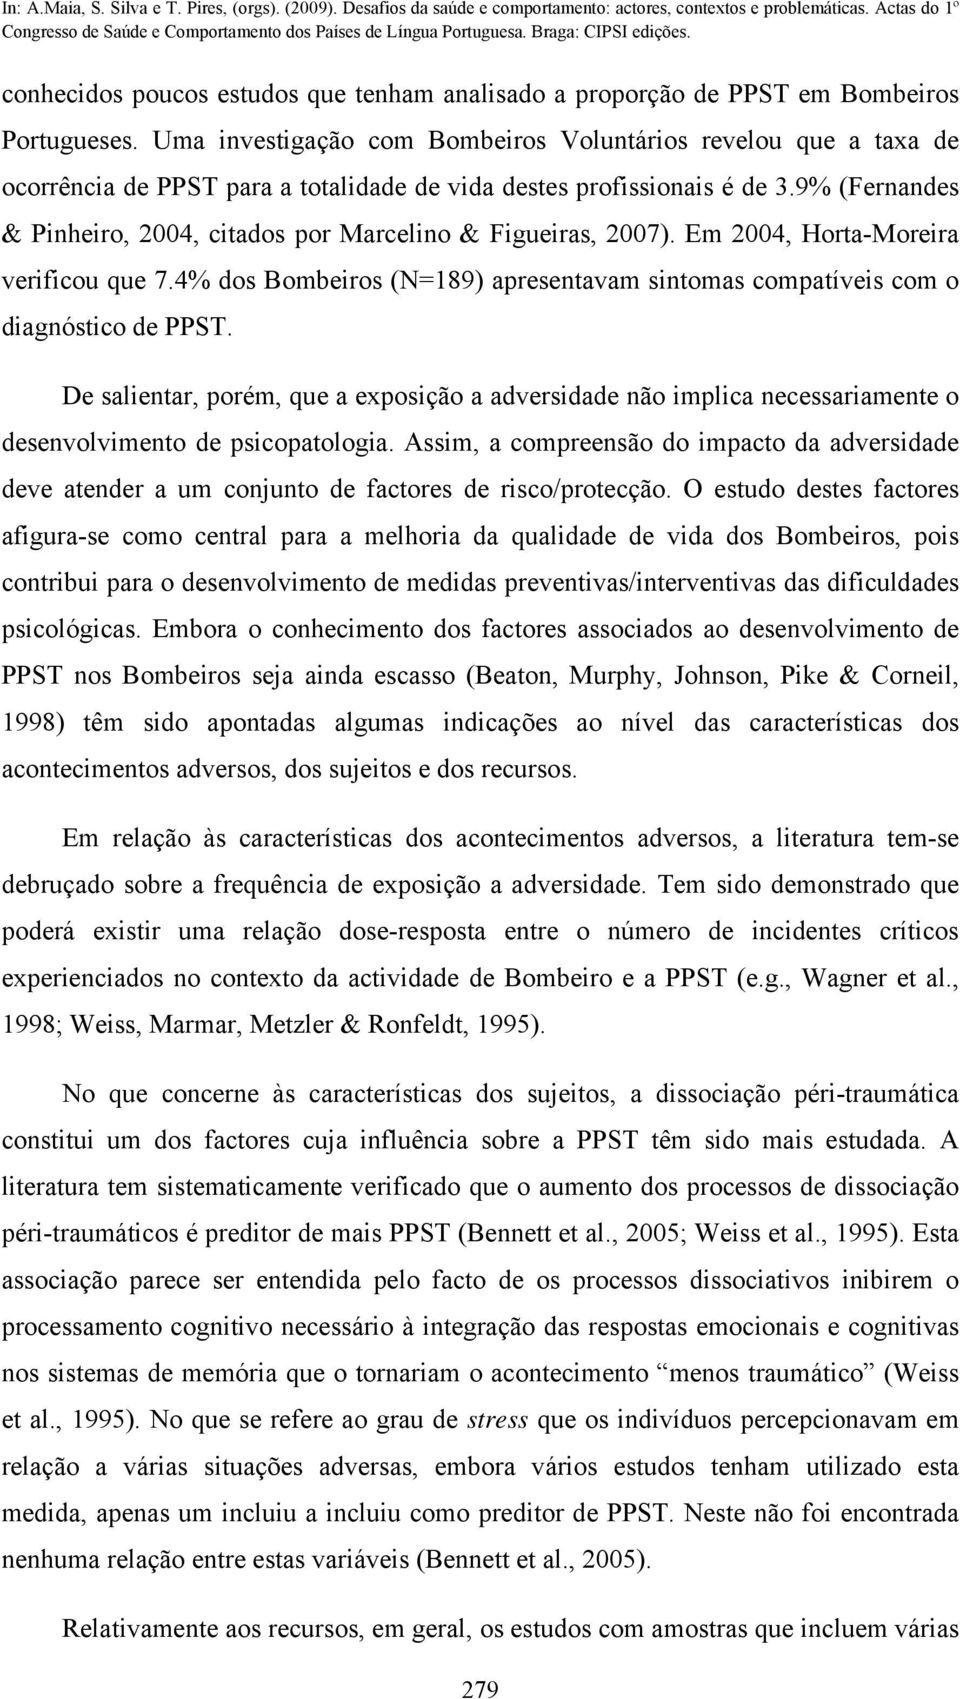 9% (Fernandes & Pinheiro, 2004, citados por Marcelino & Figueiras, 2007). Em 2004, Horta-Moreira verificou que 7.4% dos Bombeiros (N=189) apresentavam sintomas compatíveis com o diagnóstico de PPST.